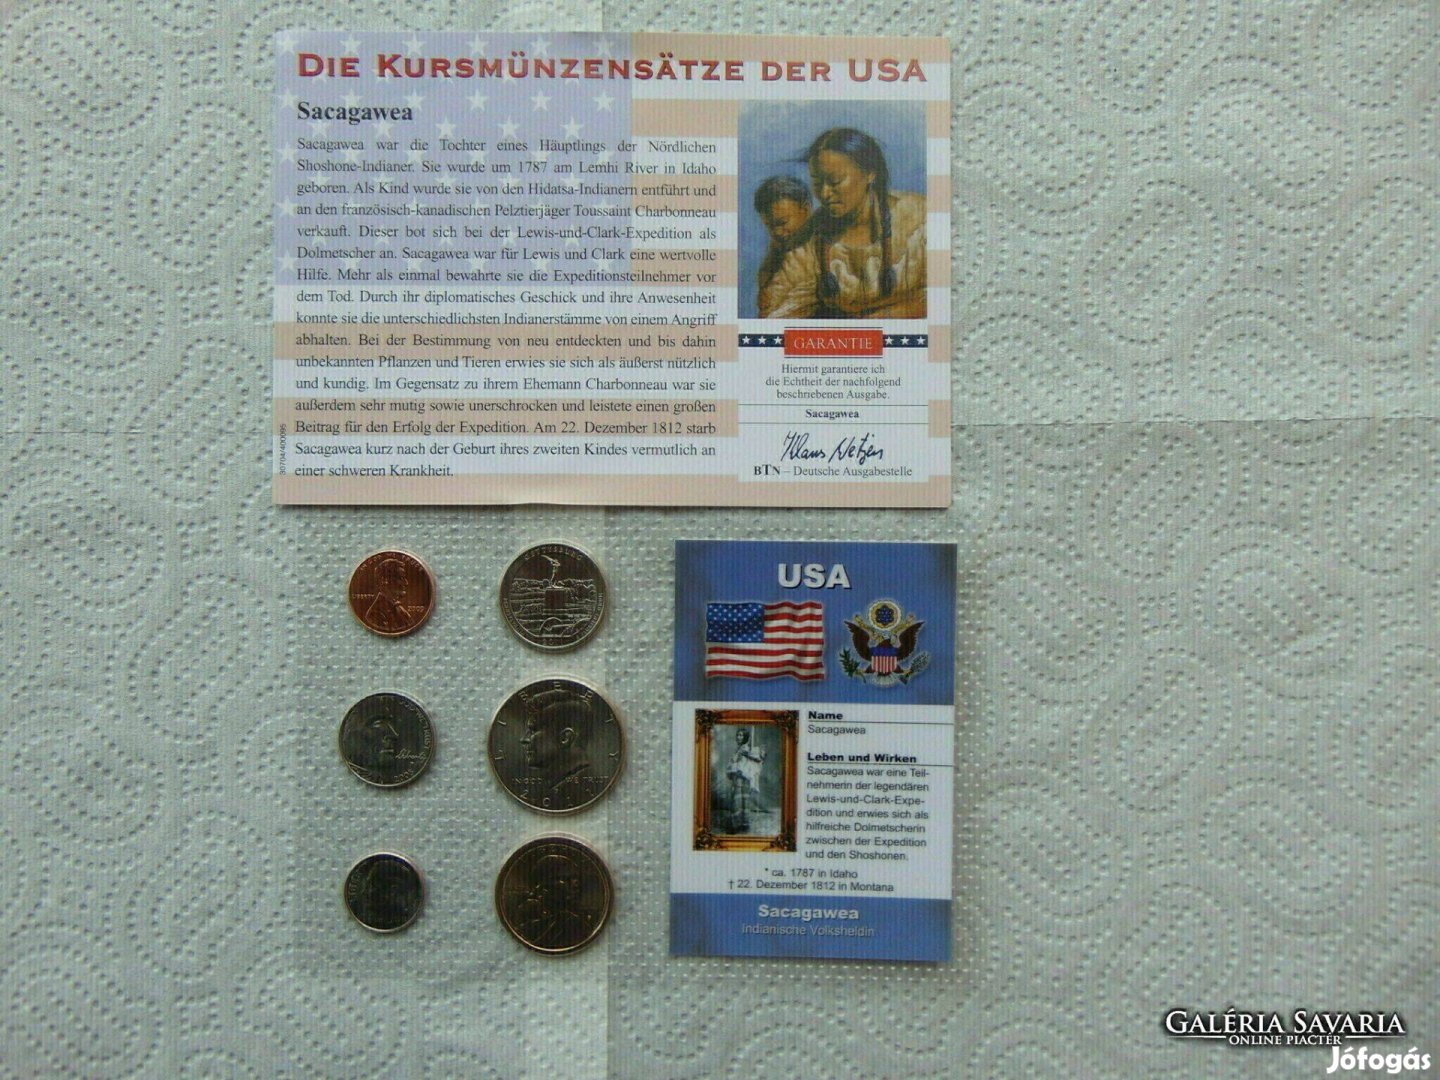 USA 6 darab cent - 1/2 dollár műagyag bliszter + certi Sacagawea indi